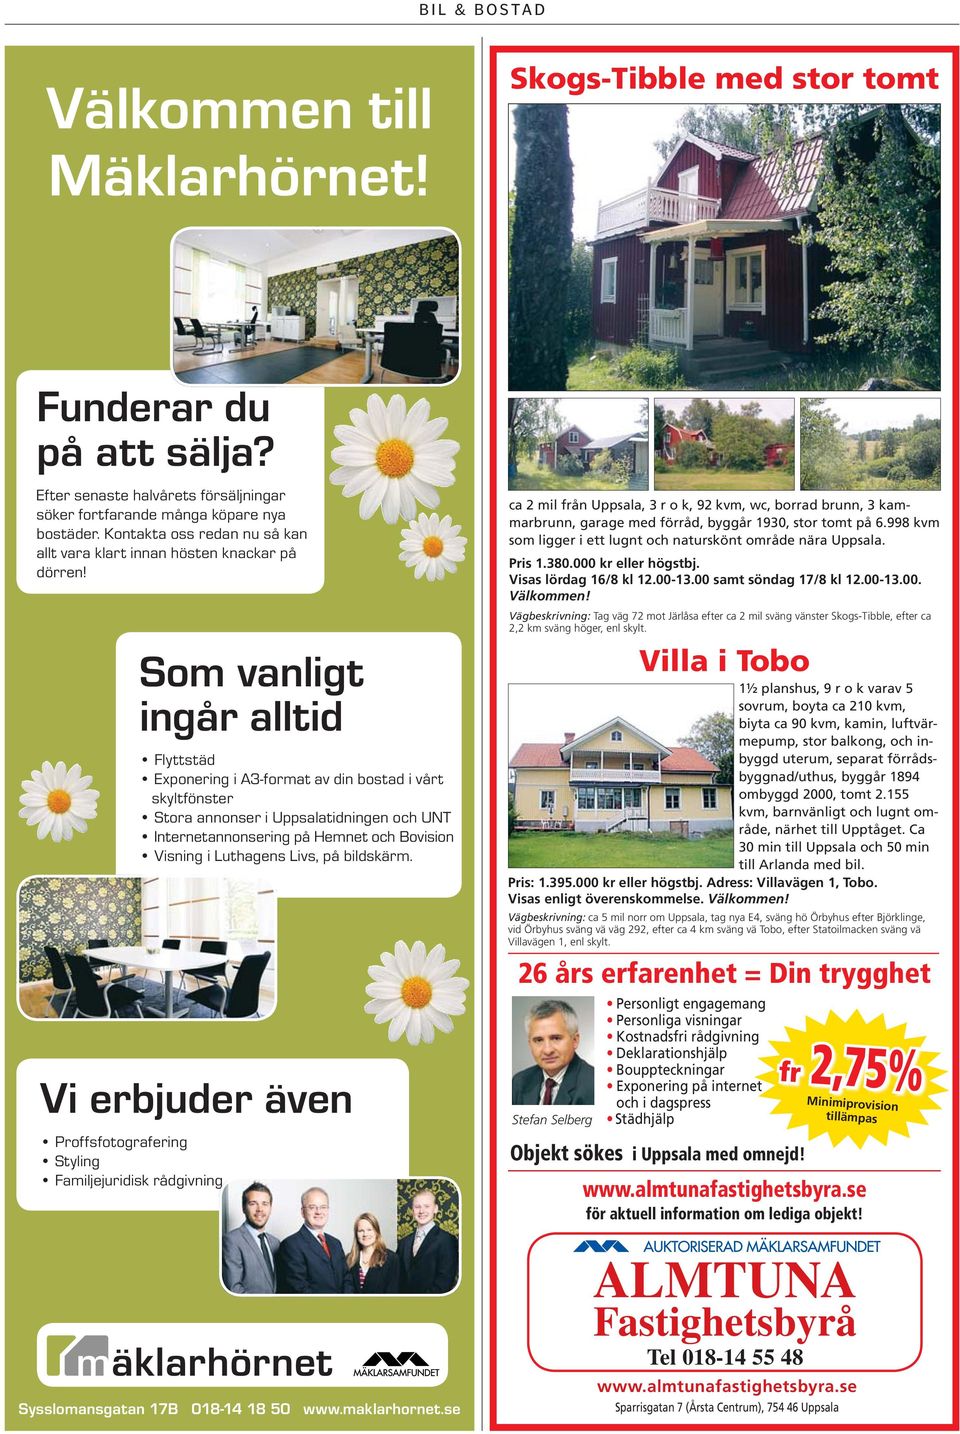 Vi erbjuder även Proffsfotografering Styling Familjejuridisk rådgivning Som vanligt ingår alltid Flyttstäd Exponering i A3-format av din bostad i vårt skyltfönster Stora annonser i Uppsalatidningen